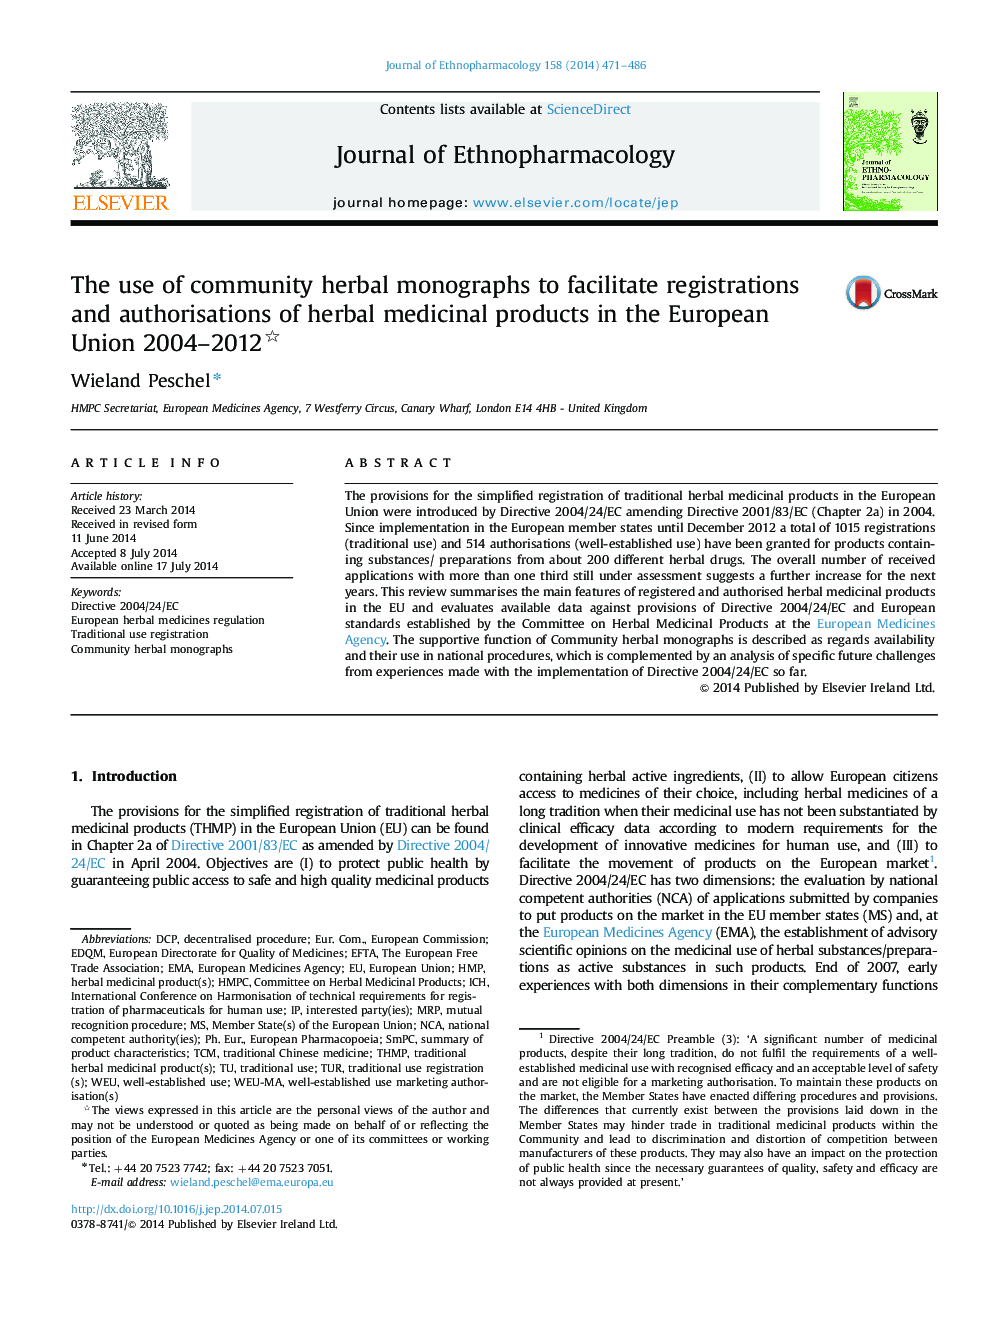 استفاده از مقالات گیاهی جامعه برای تسهیل ثبت نام و تایید داروهای گیاهی در اتحادیه اروپا 2004-2012 